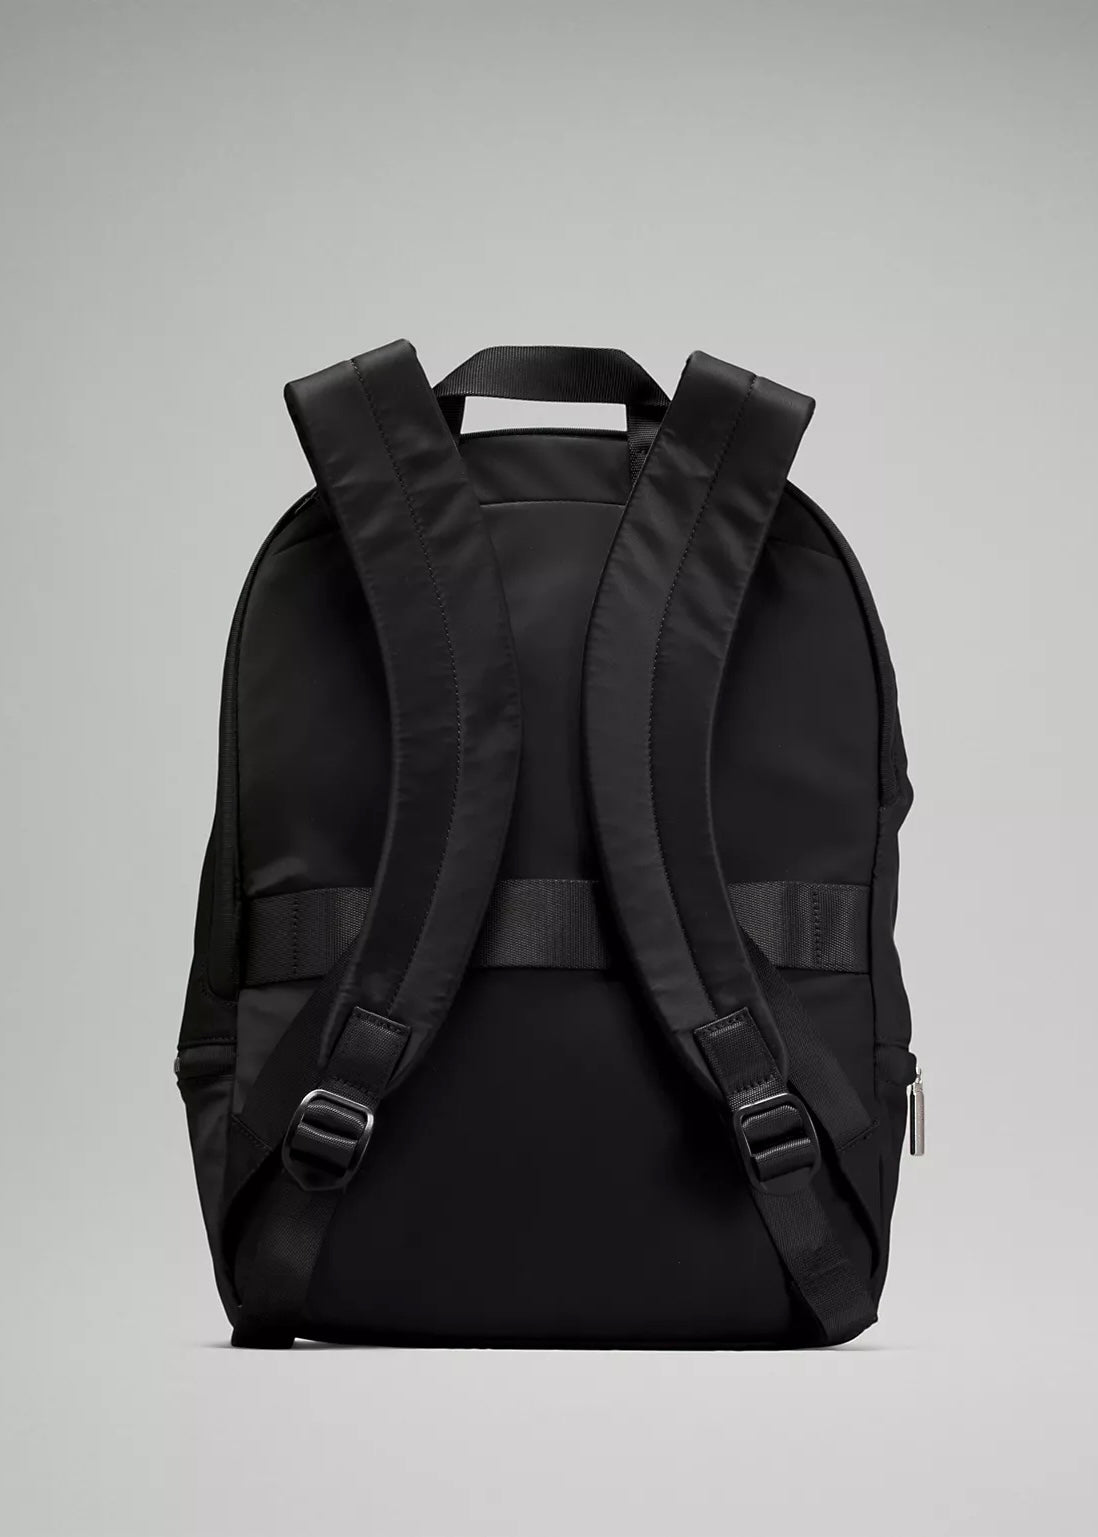 New LULULEMON City Adventurer Backpack